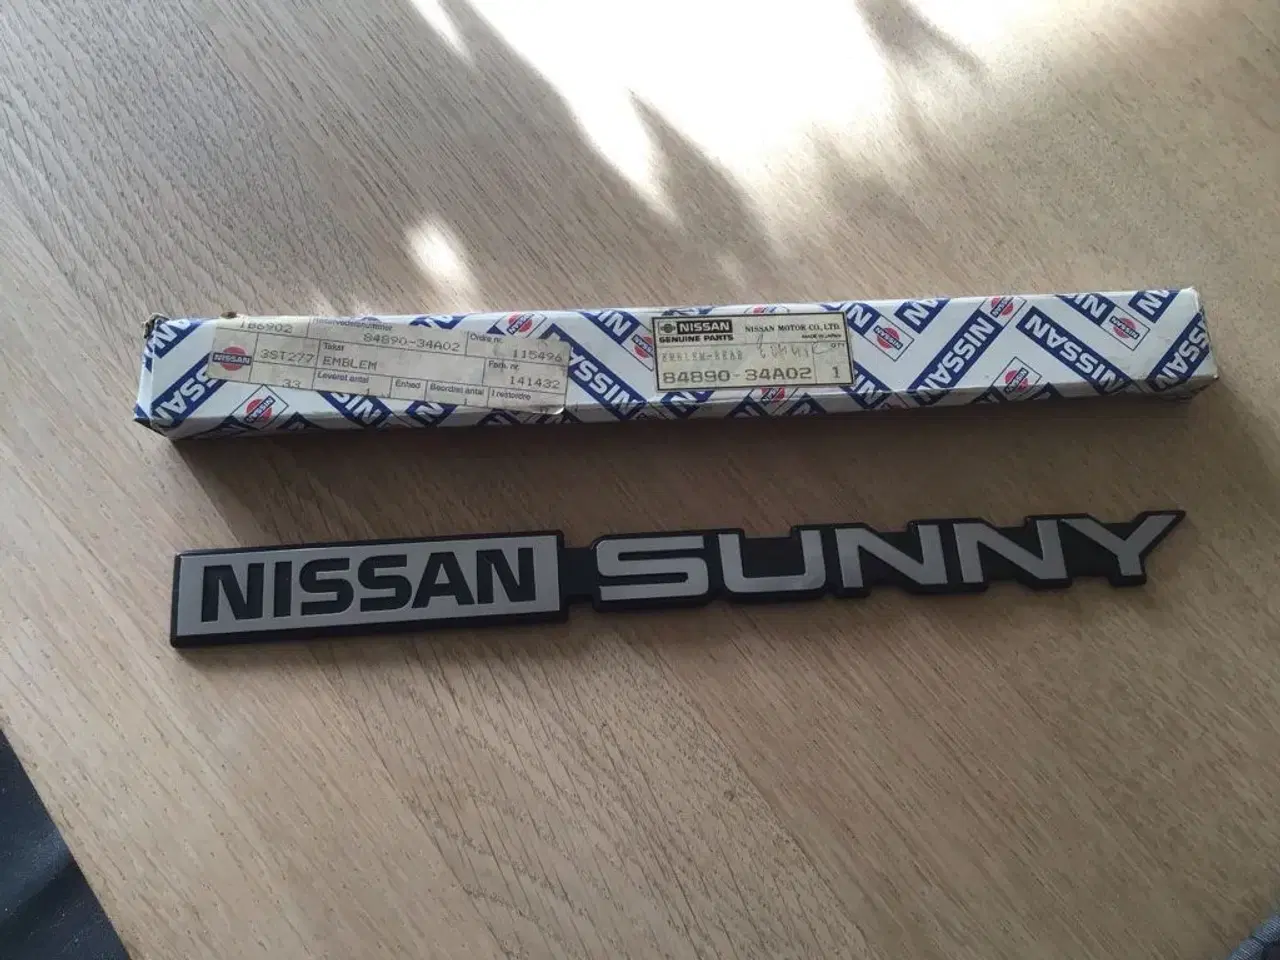 Billede 1 - Nissan sunny skilt